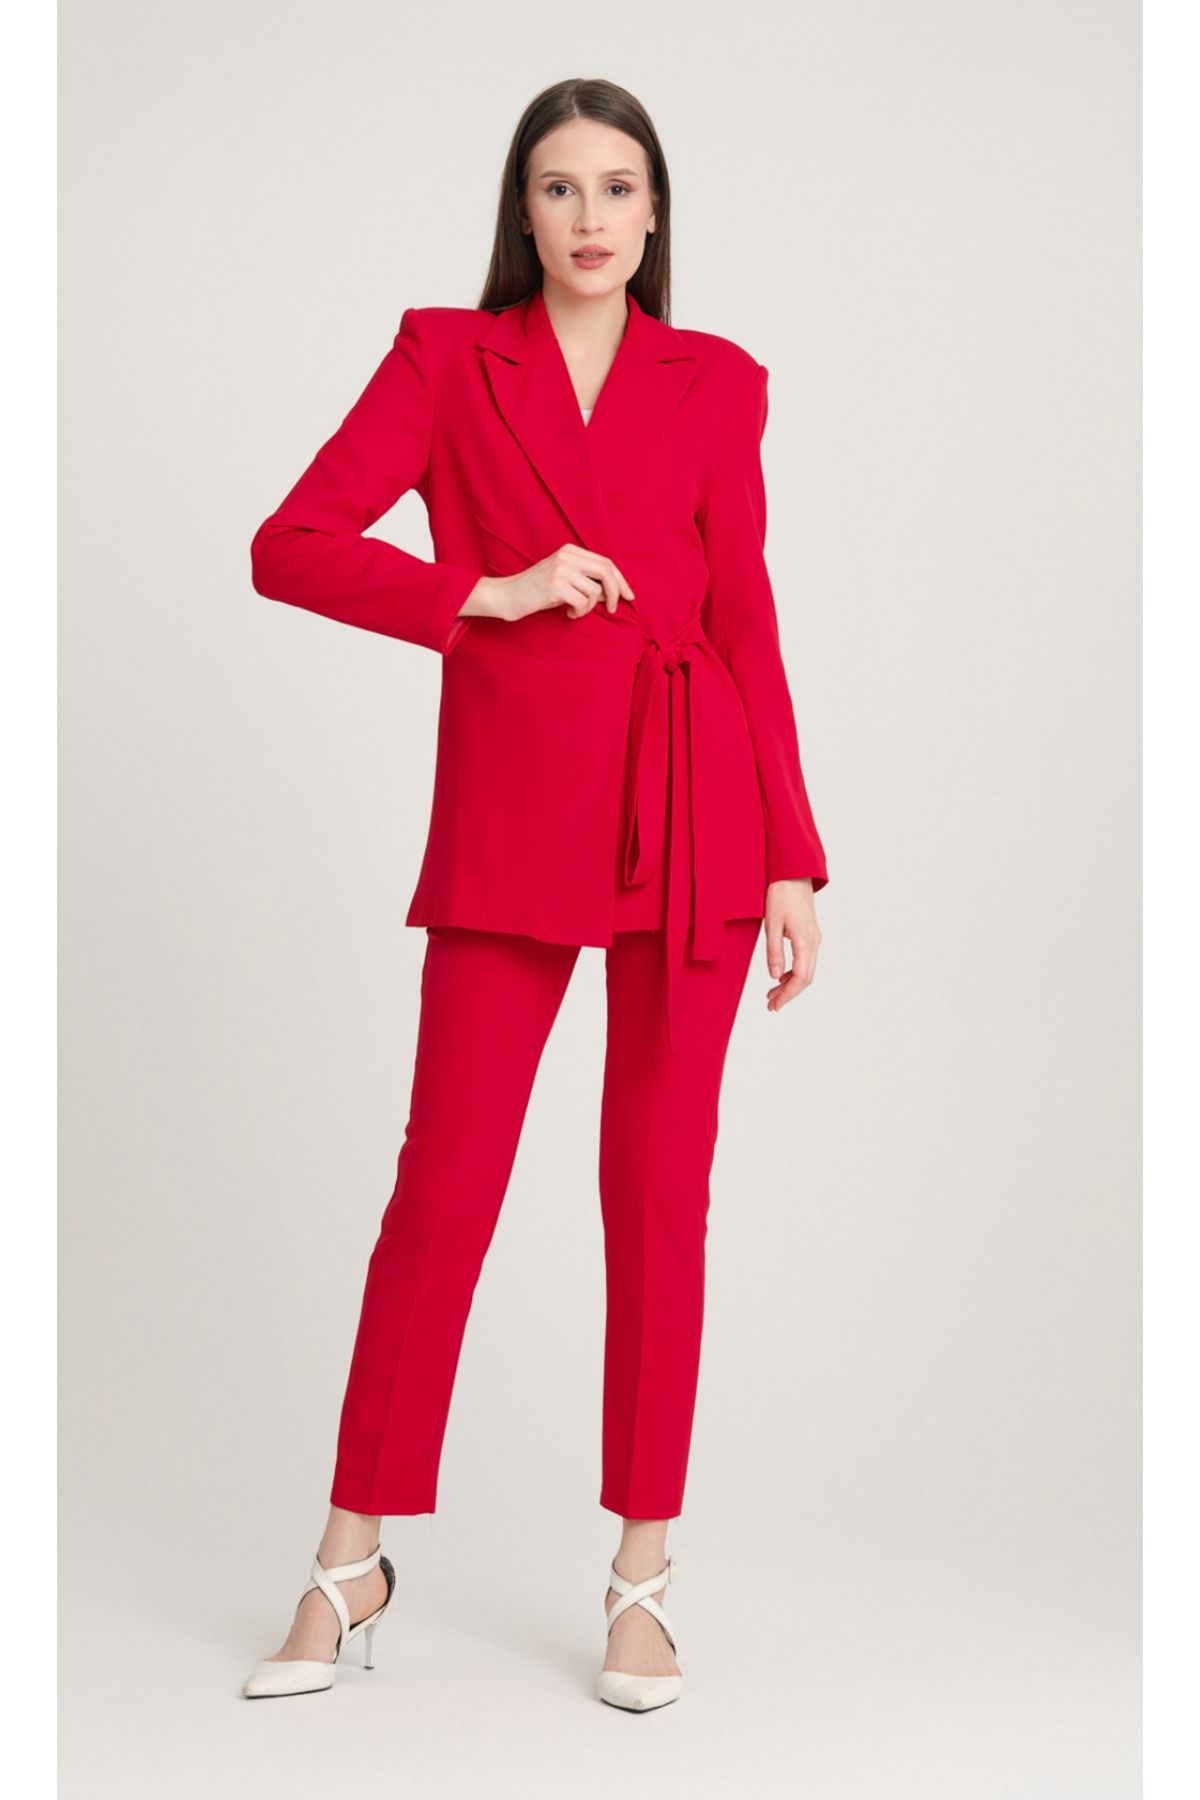 pembekurdelem Kadın Bağlamalı Ceket Pantolon Takım Kırmızı